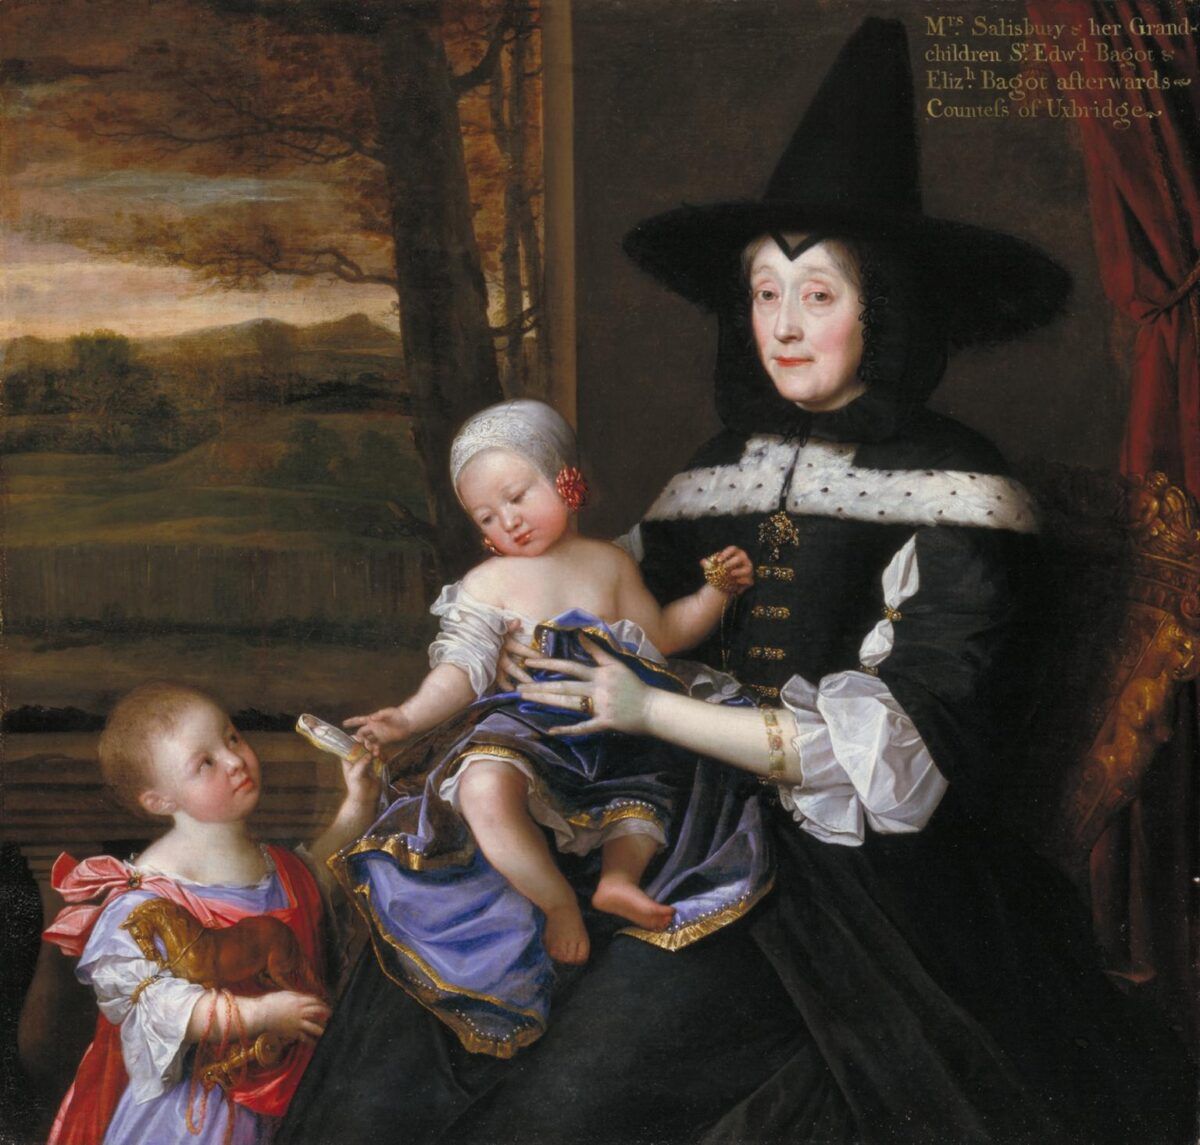 Portrét paní Salesburyové s vnoučaty Edwardem a Elizabeth Bagotovými 1675-6 John Michael Wright 1617-1694 Prezentováno Patrony britského umění prostřednictvím Tate Gallery Foundation 1993 http://www.tate.org.uk/art/work/T06750